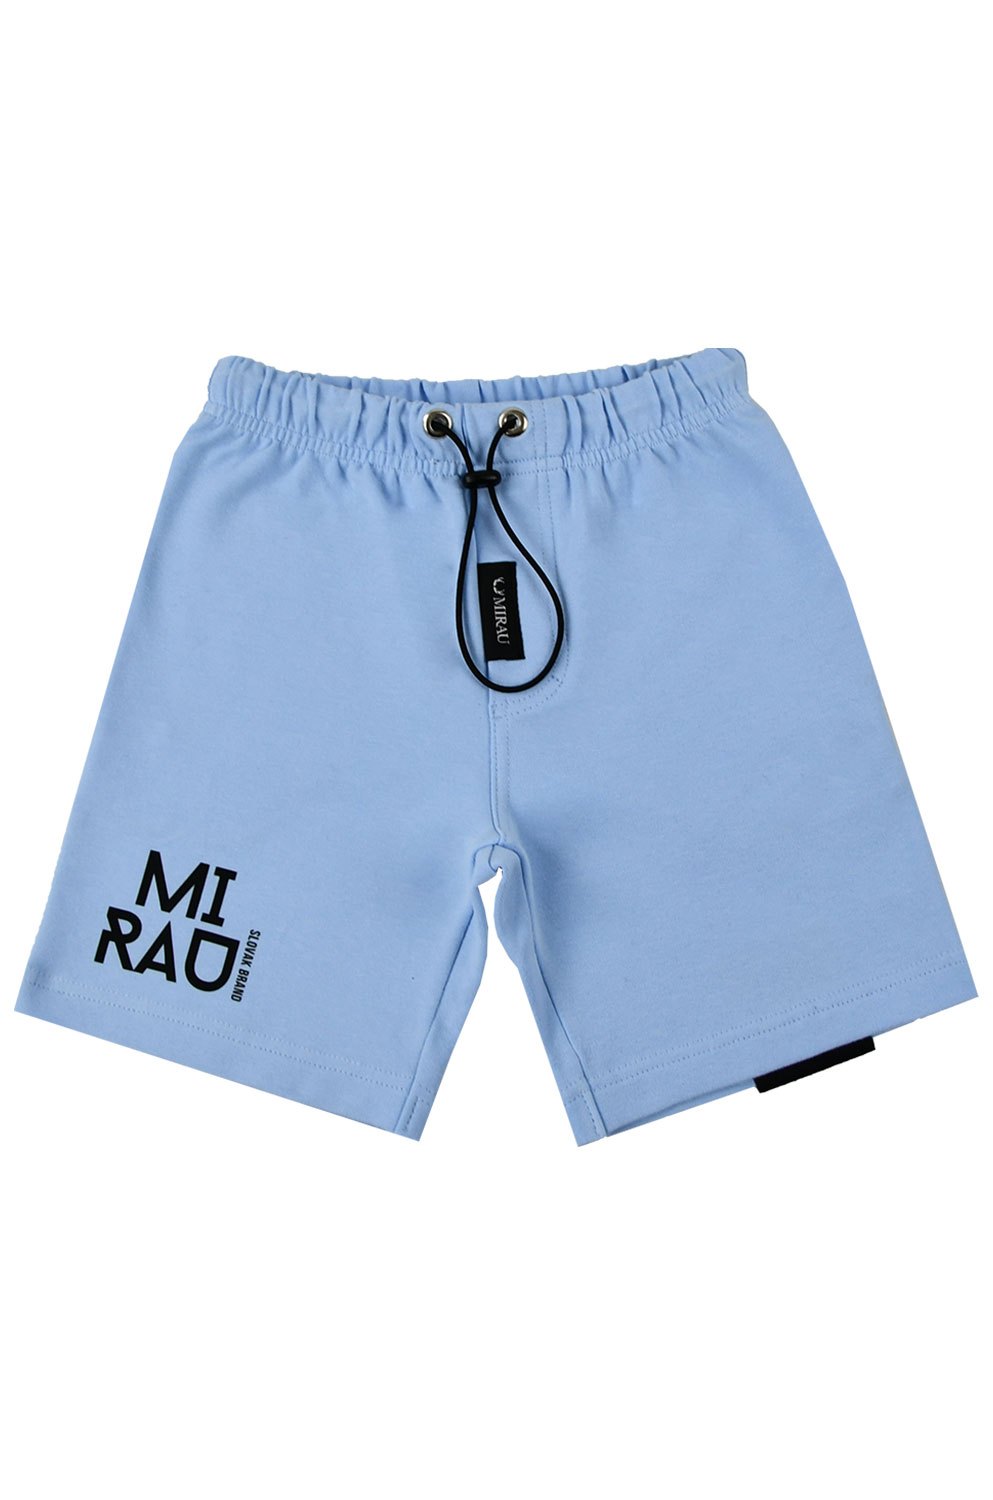 Chlapecké krátké kalhoty - Mirau Brand